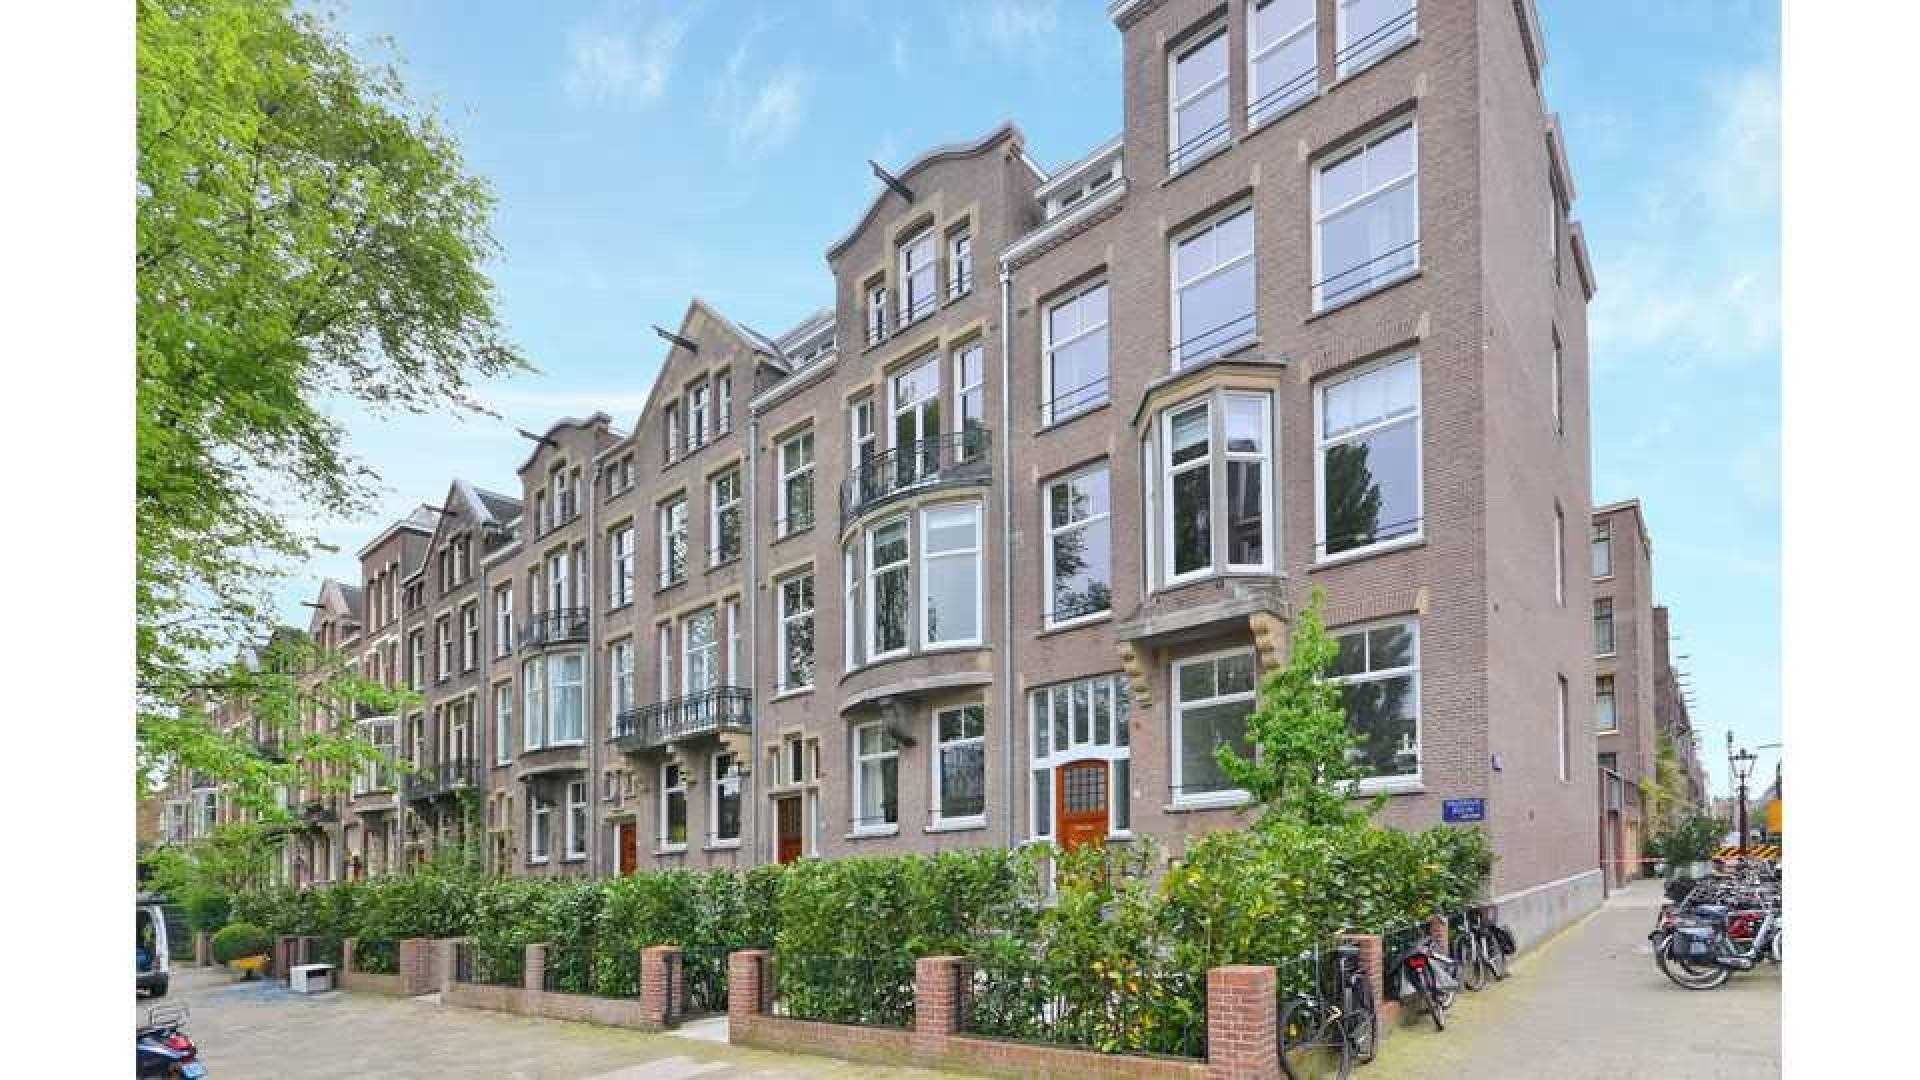 Hart van Nederland presentatrice Gallyon van Vessem verkoopt haar pand In Amsterdam Zuid in recordtijd. Zie foto's 1